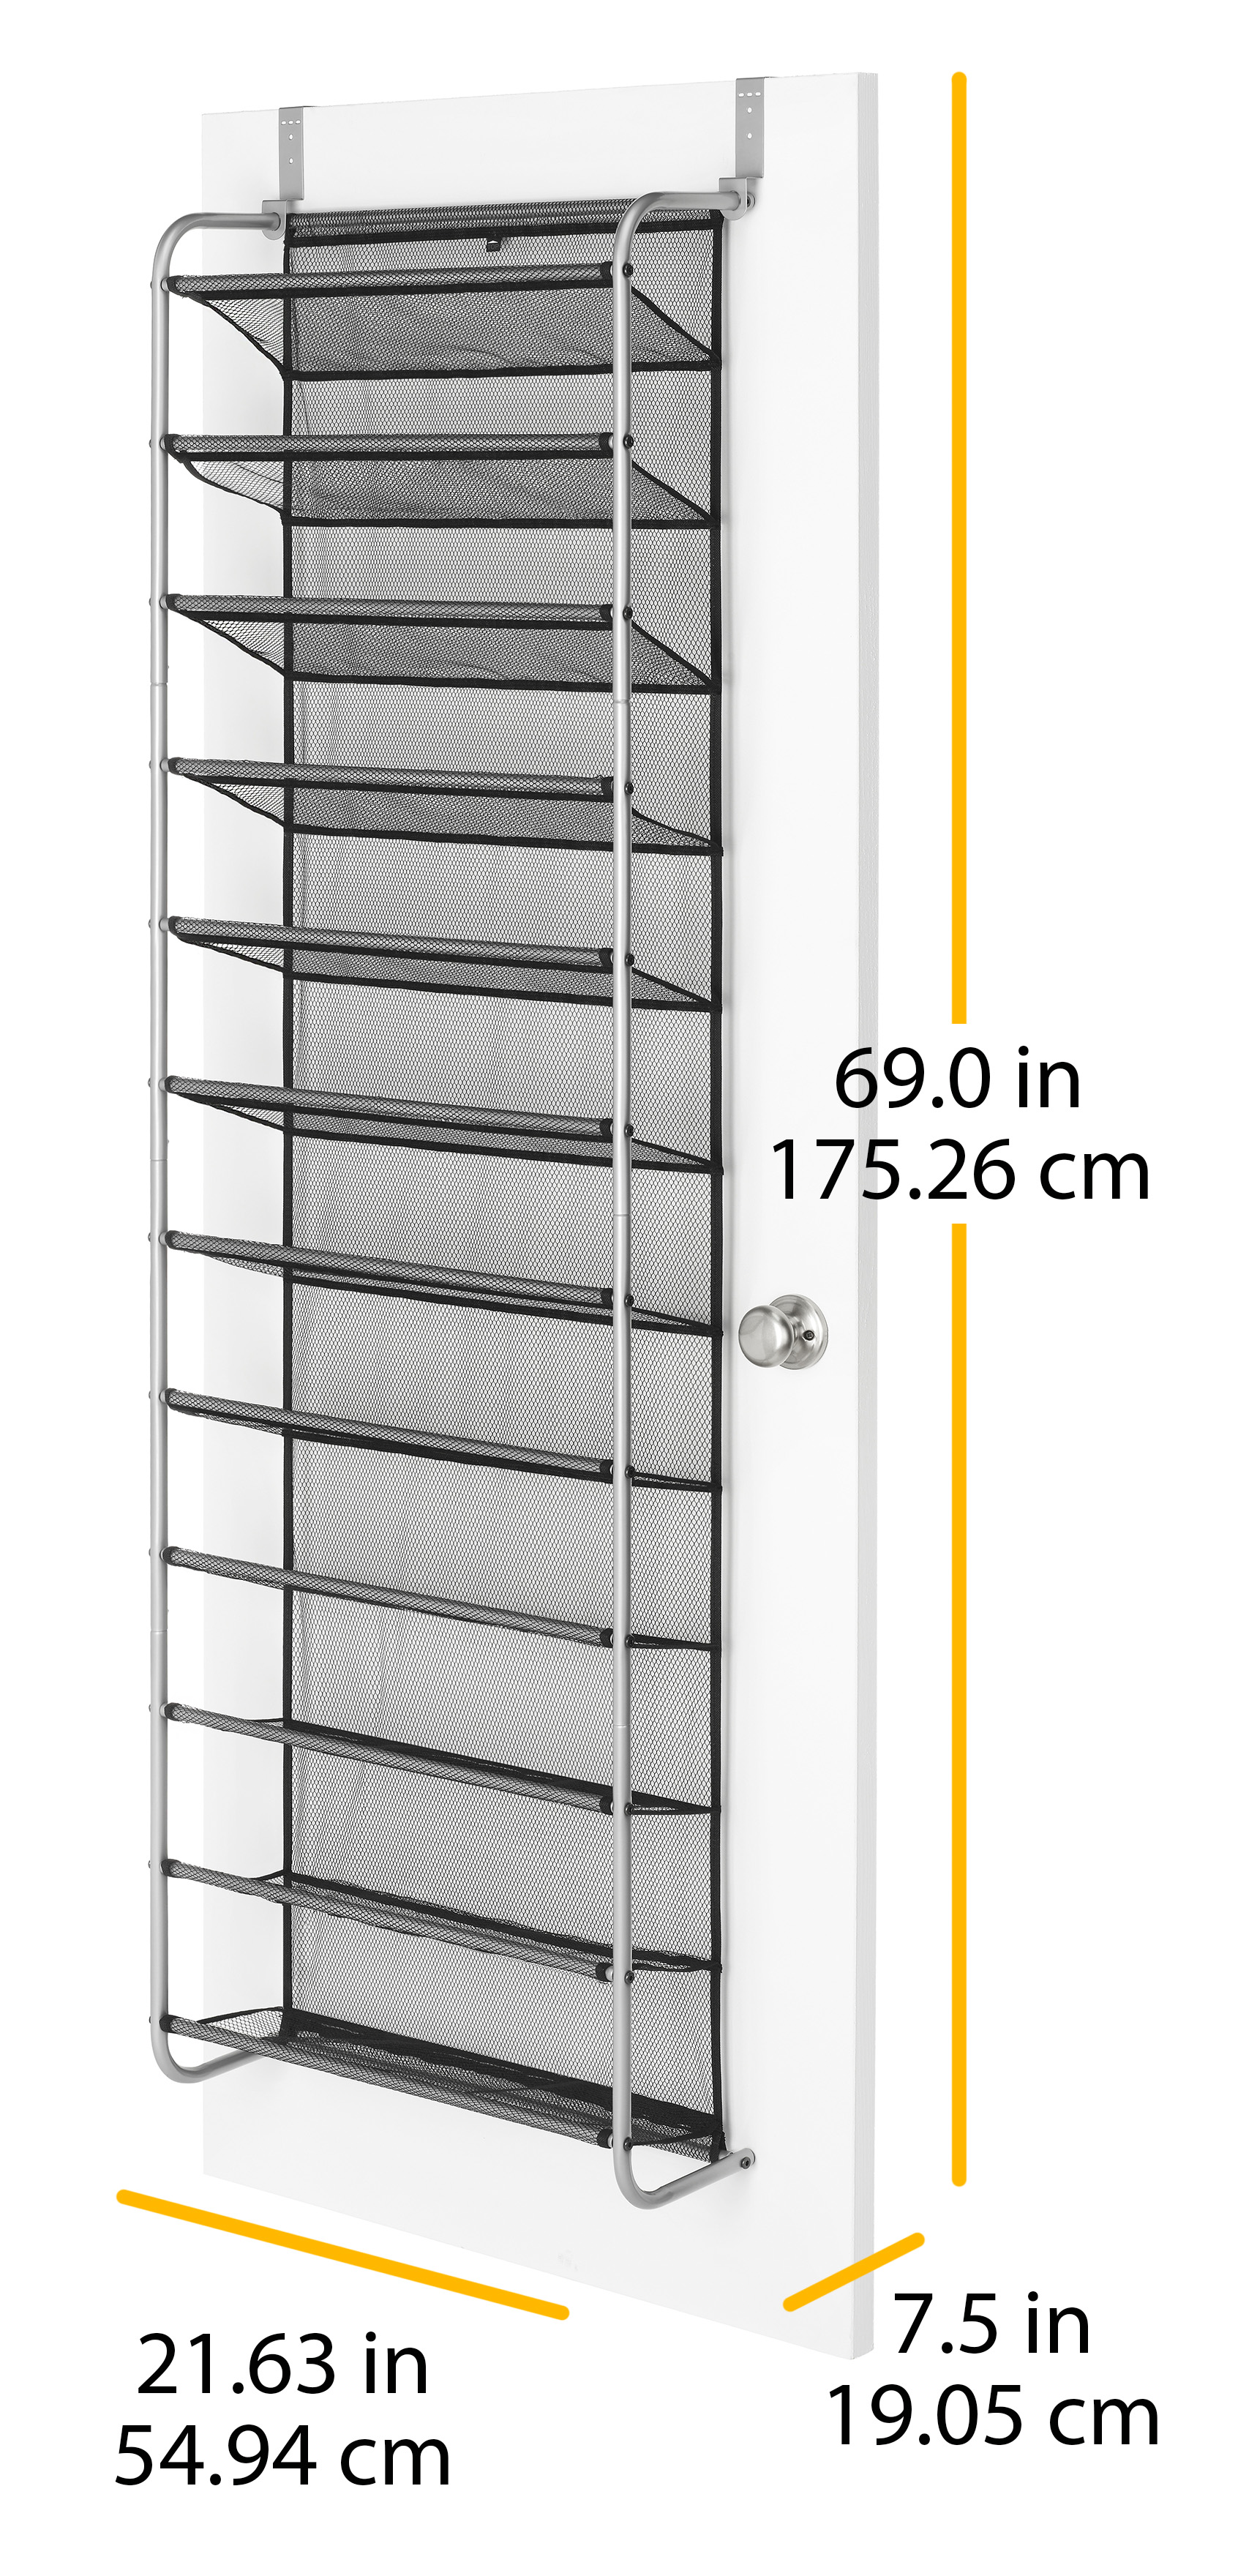 Mainstays 12-Tier Over The Door Shoe Rack for 36 Pairs, Metal, Gray - image 2 of 5